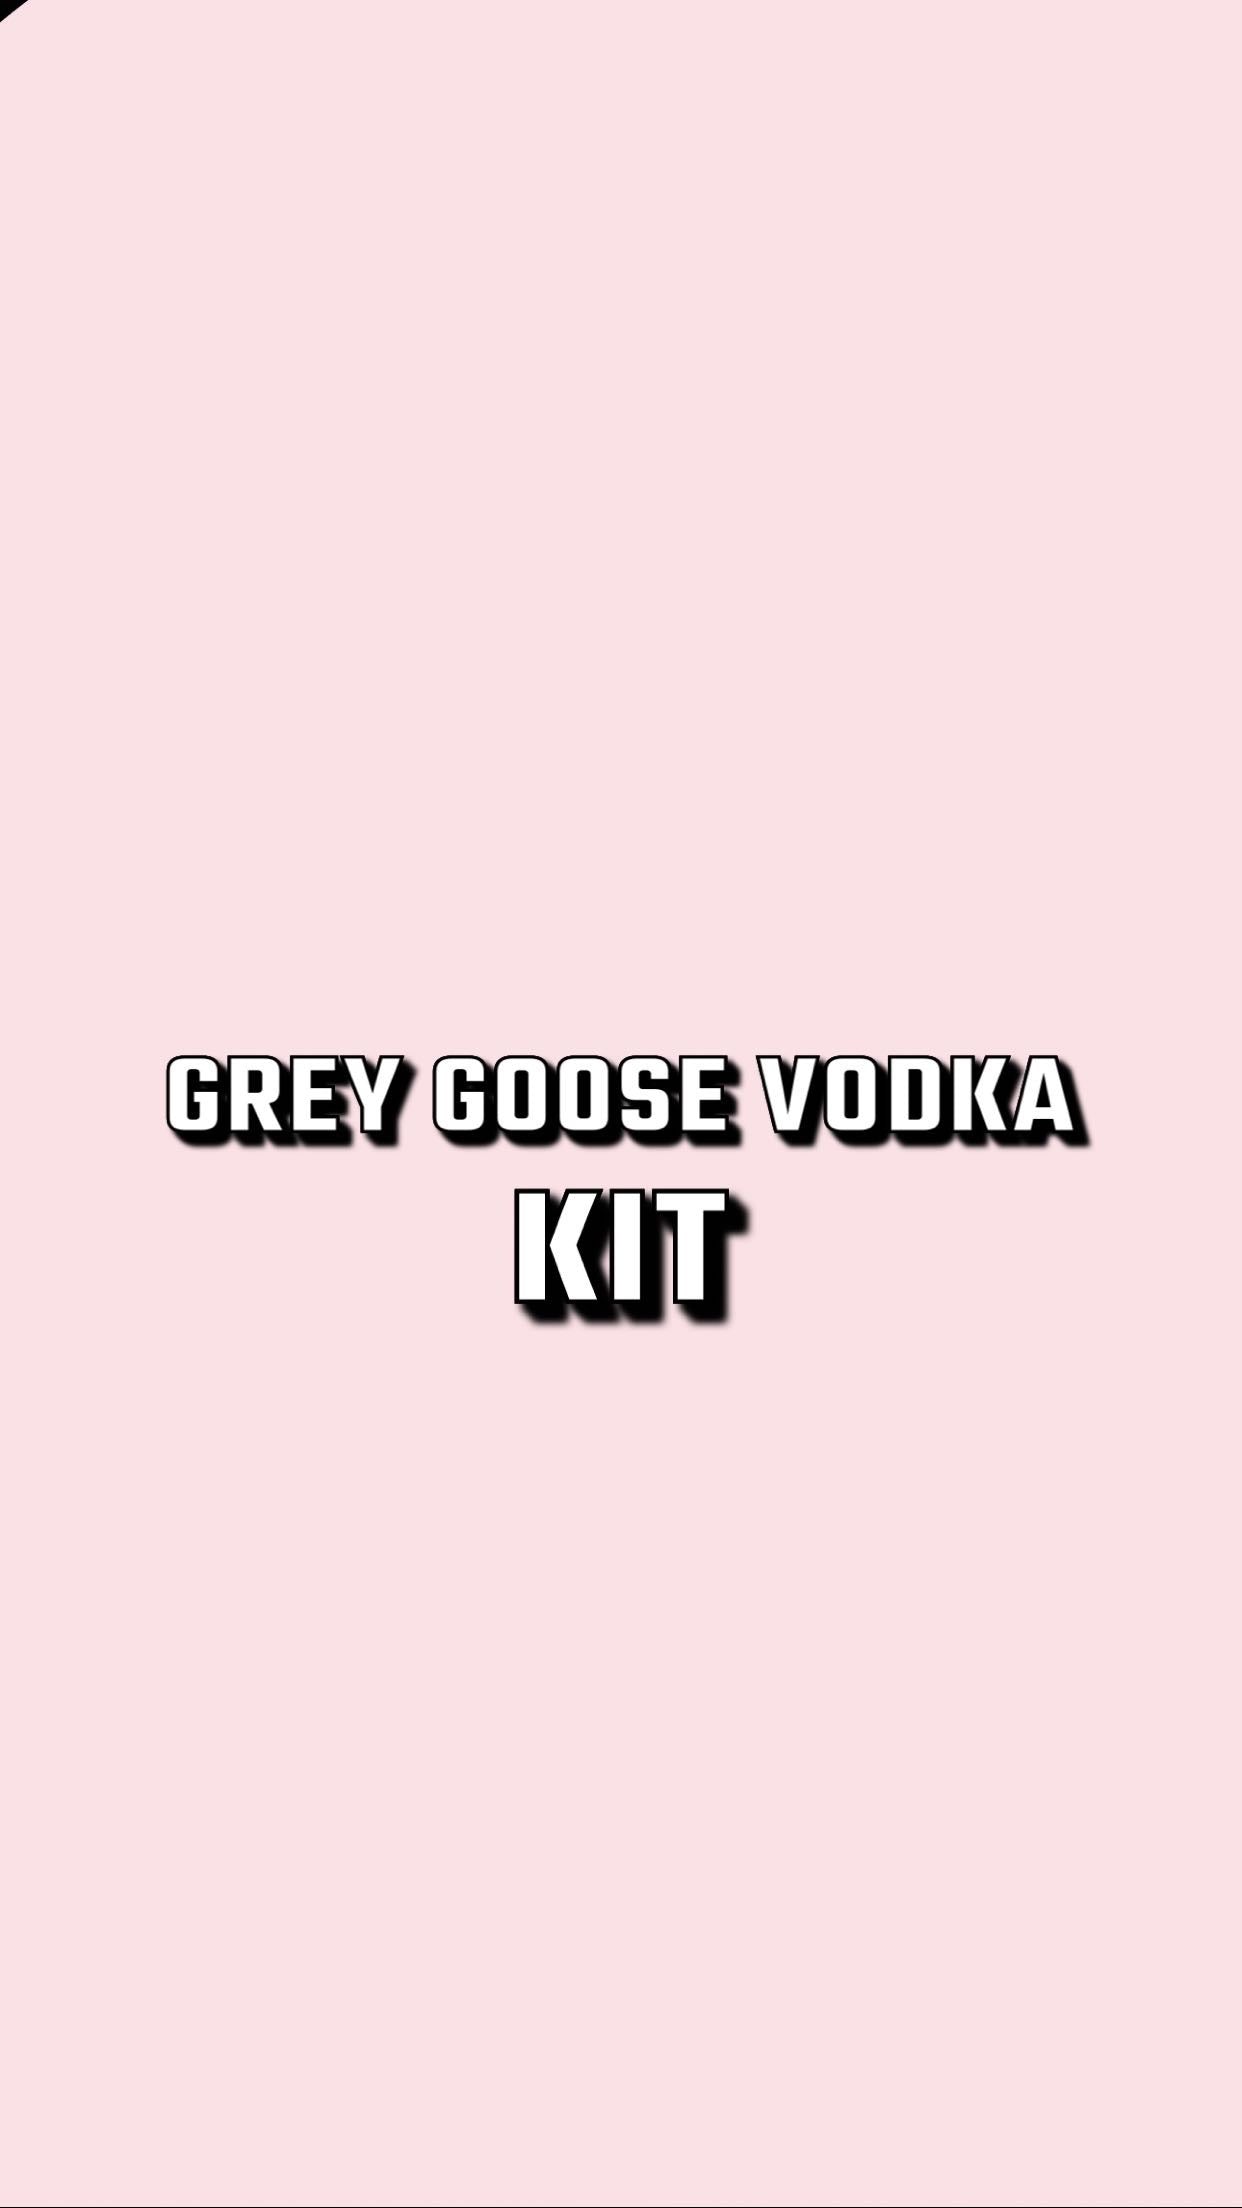 Grey Goose Vodka KIT